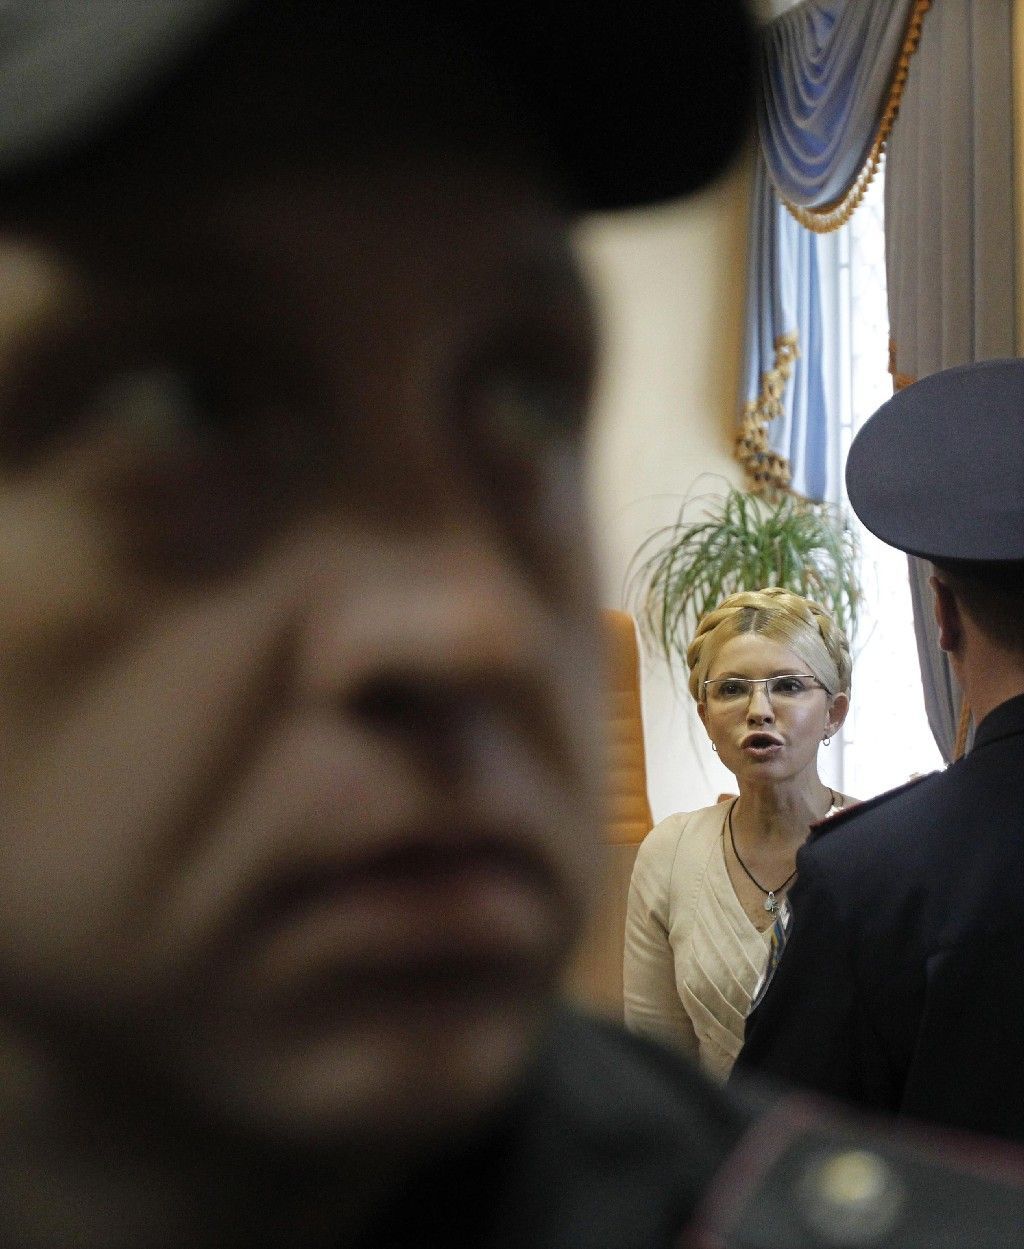 Expremiérka Julia Tymošenková u soudu - 11. října 2011